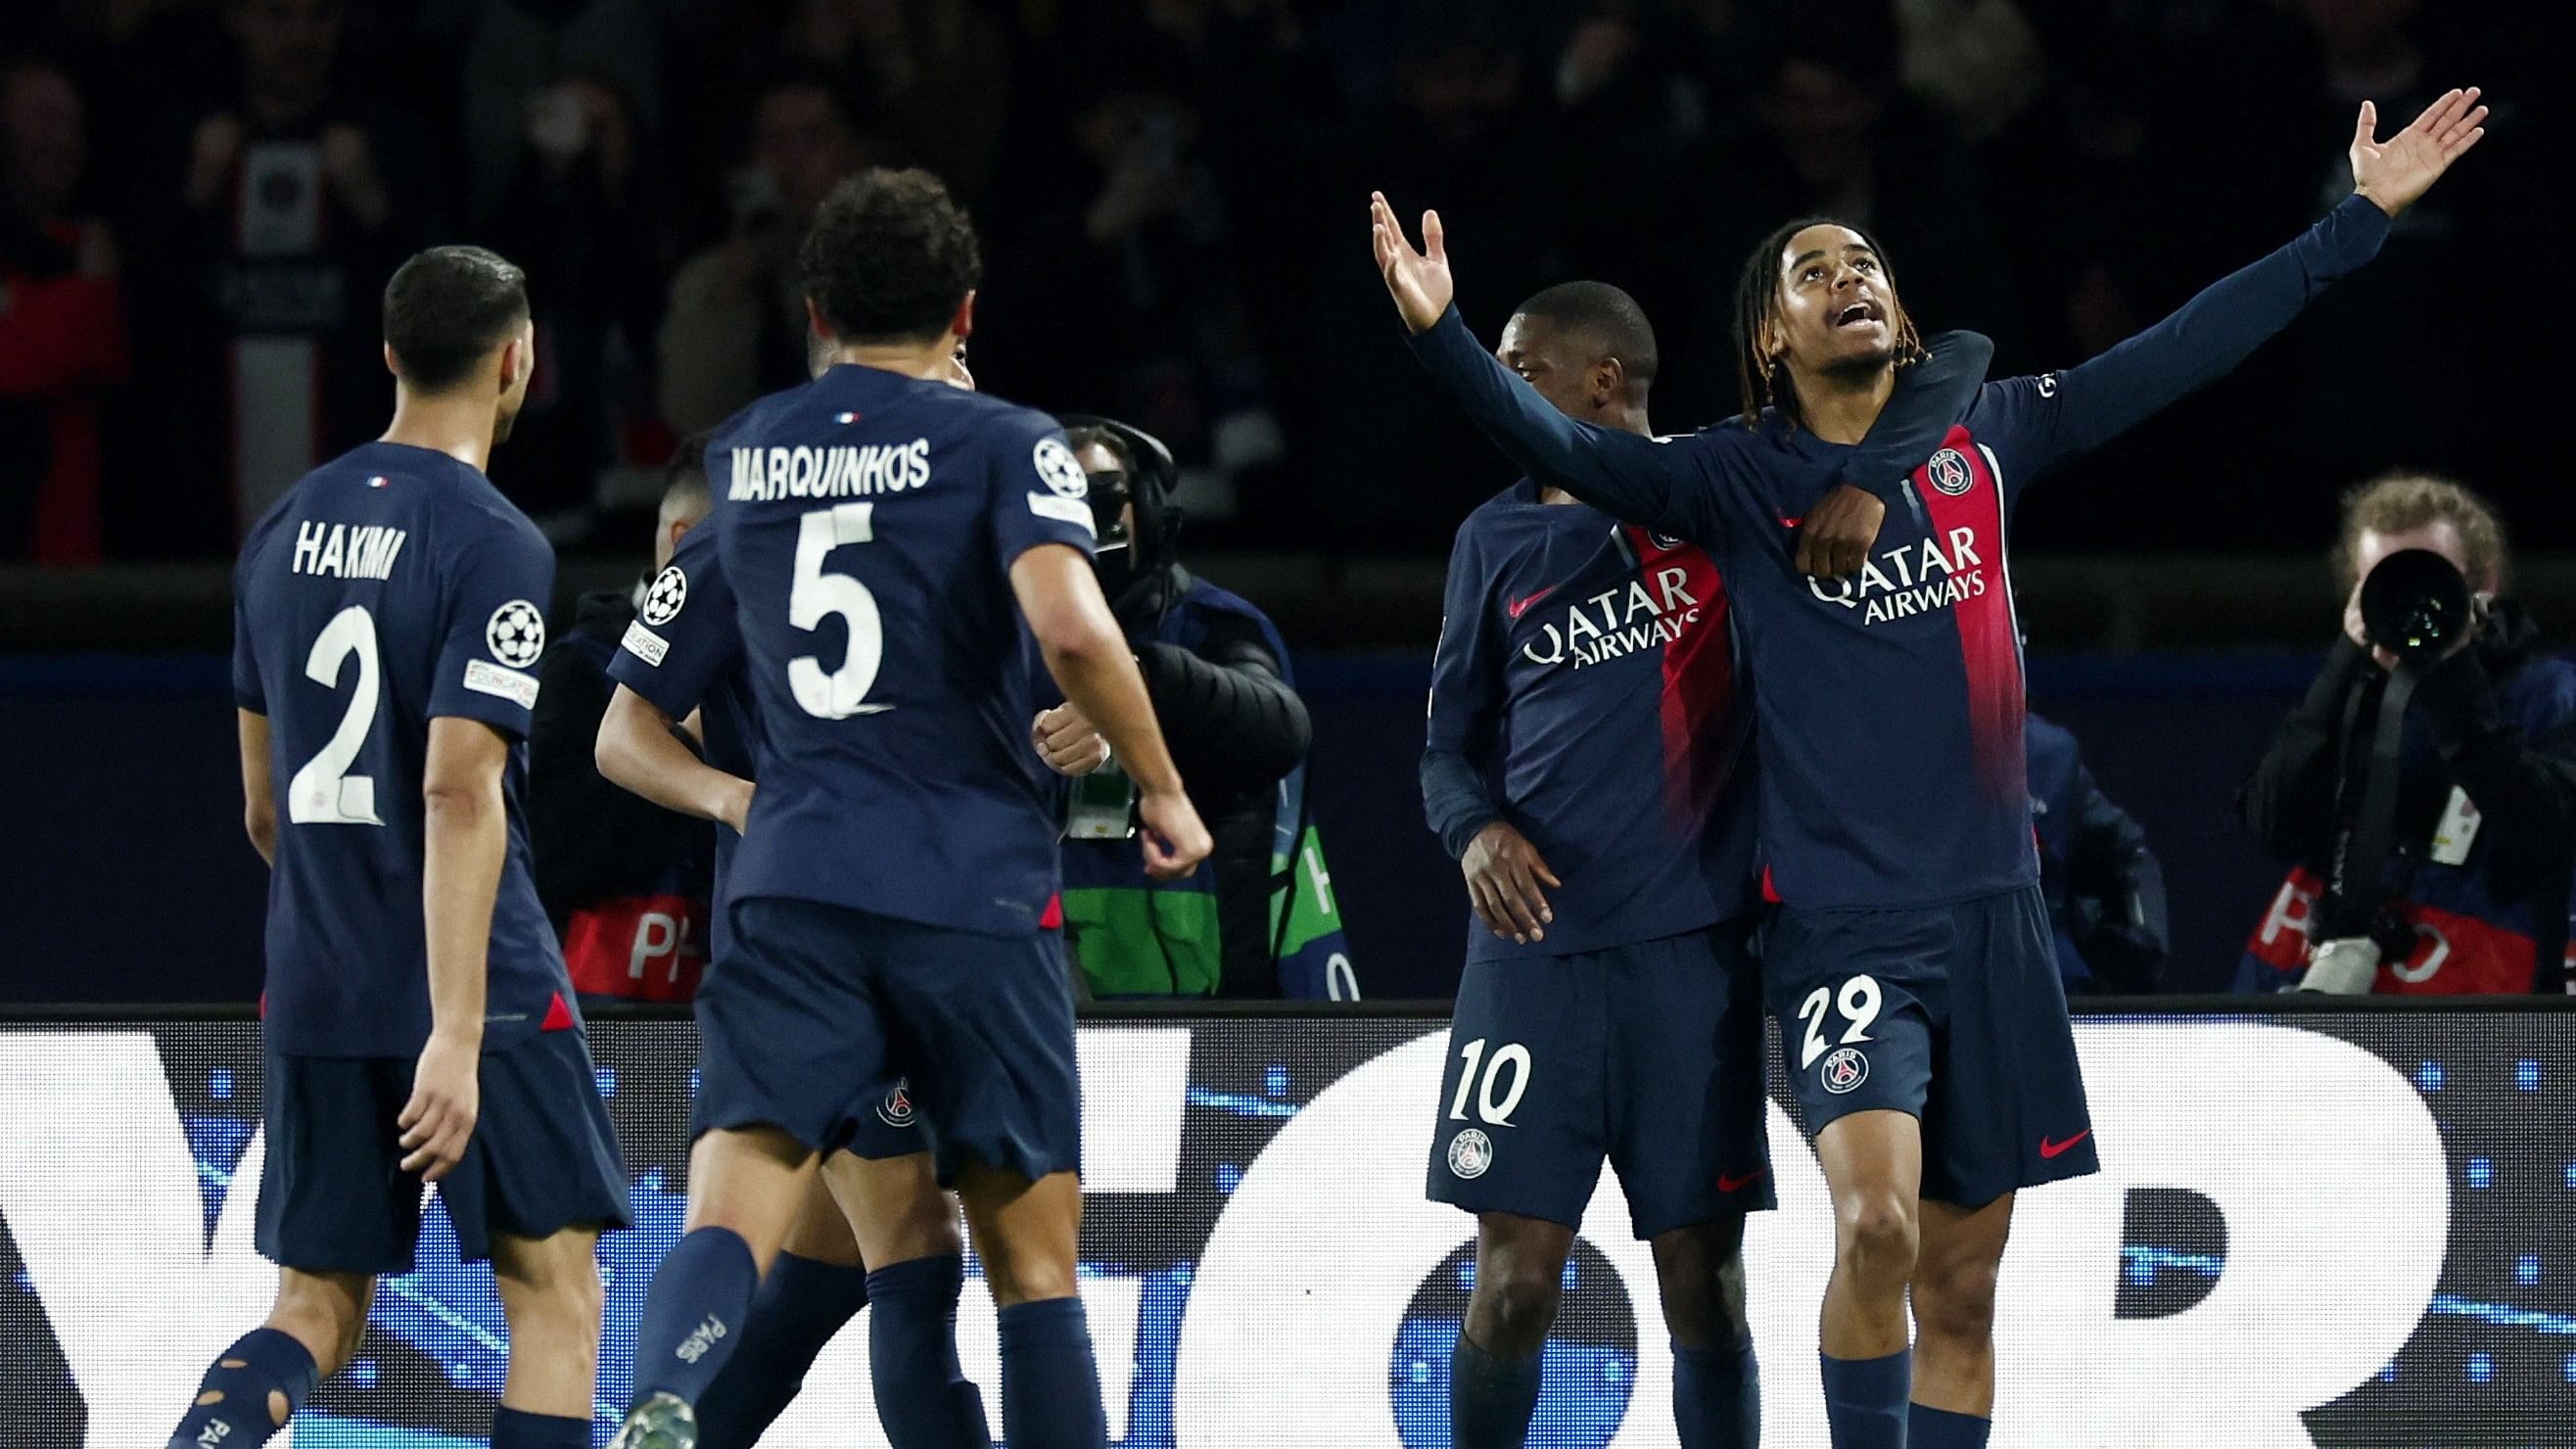 <div class="paragraphs"><p>Paris St Germain's Bradley Barcola celebrates after scoring against Real Sociedad.</p></div>